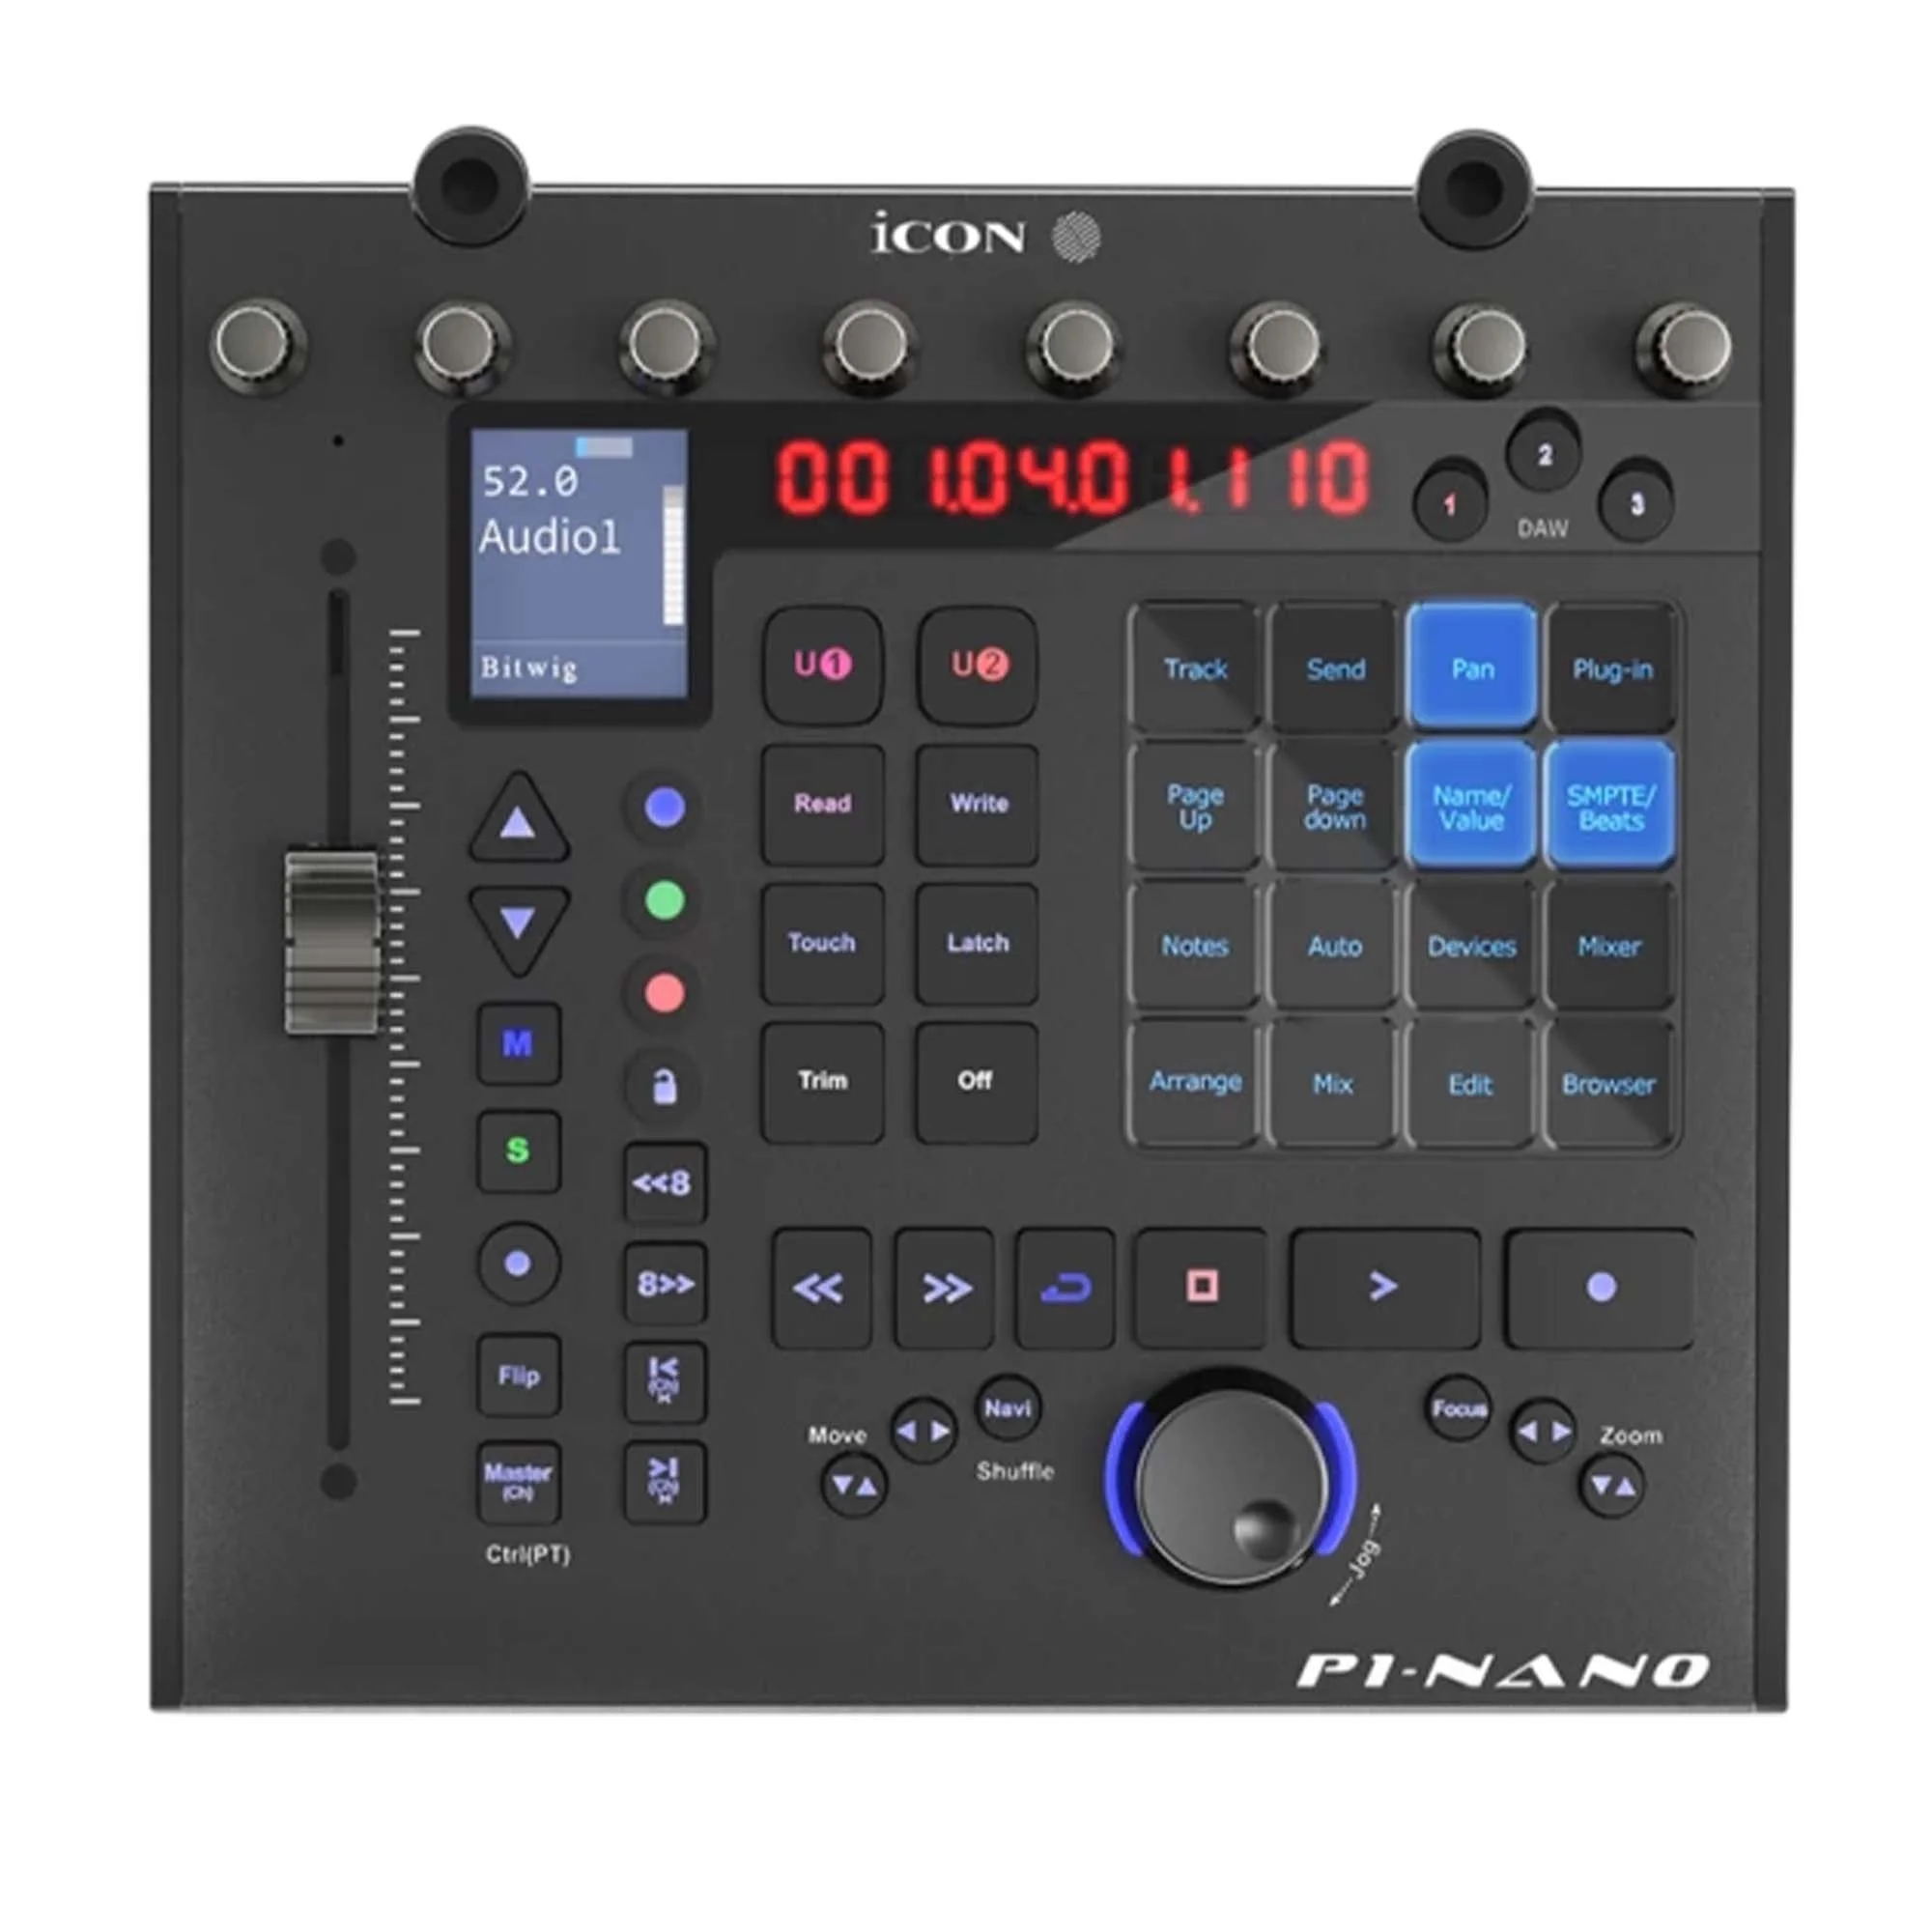 MIDI музыкальные системы (интерфейсы, контроллеры) iCON P1 Nano